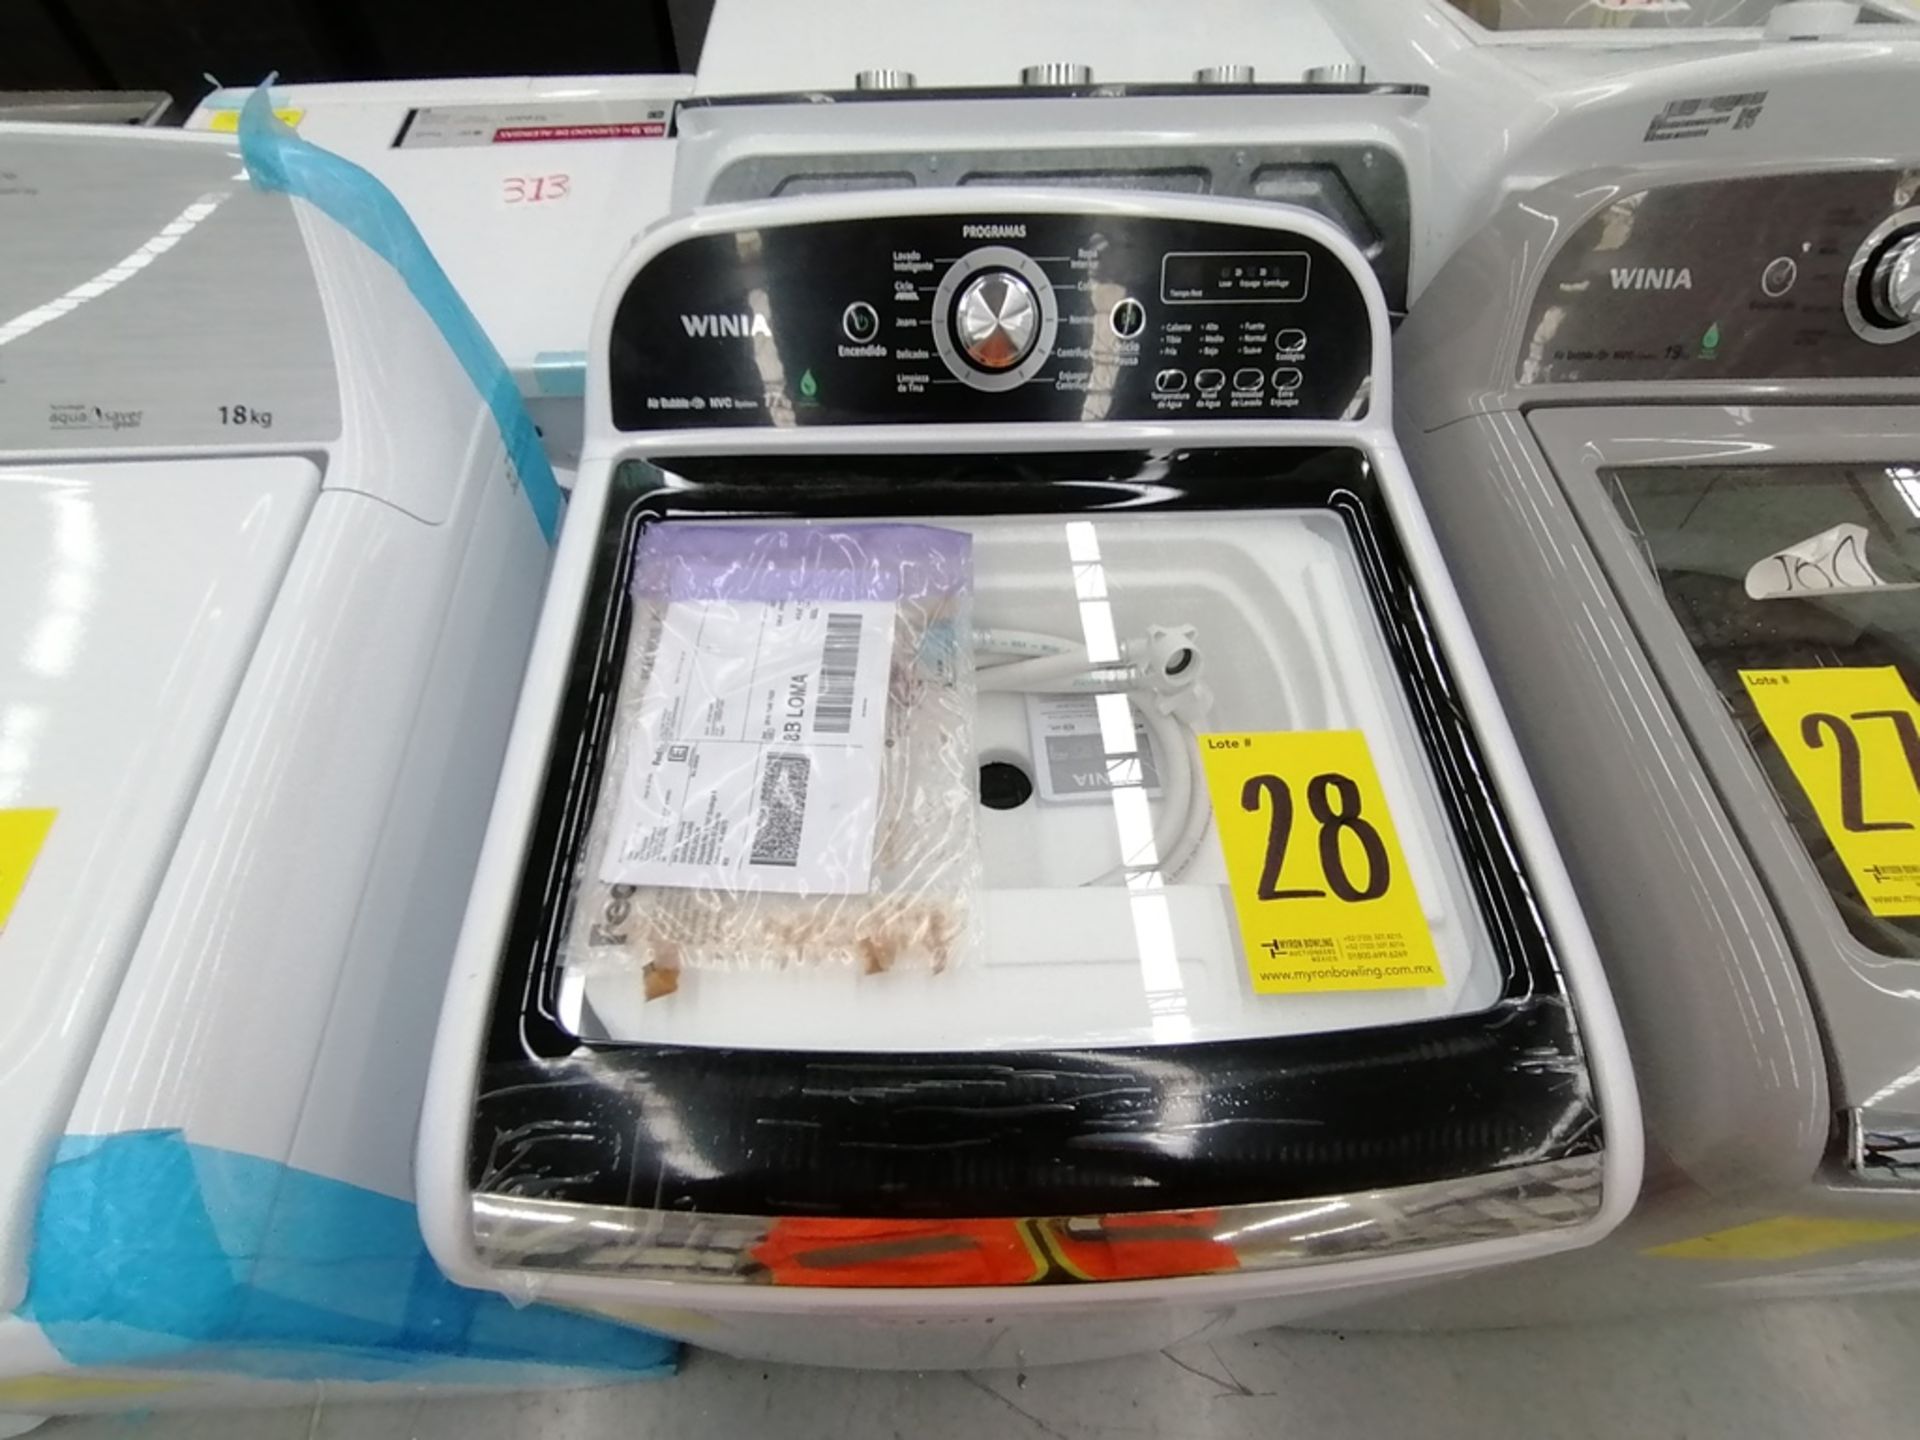 Lote de 3 lavadoras contiene: 1 Lavadora de 16KG, Marca Mabe, Modelo LMA46102VBAB02, Serie 2108S802 - Image 5 of 29